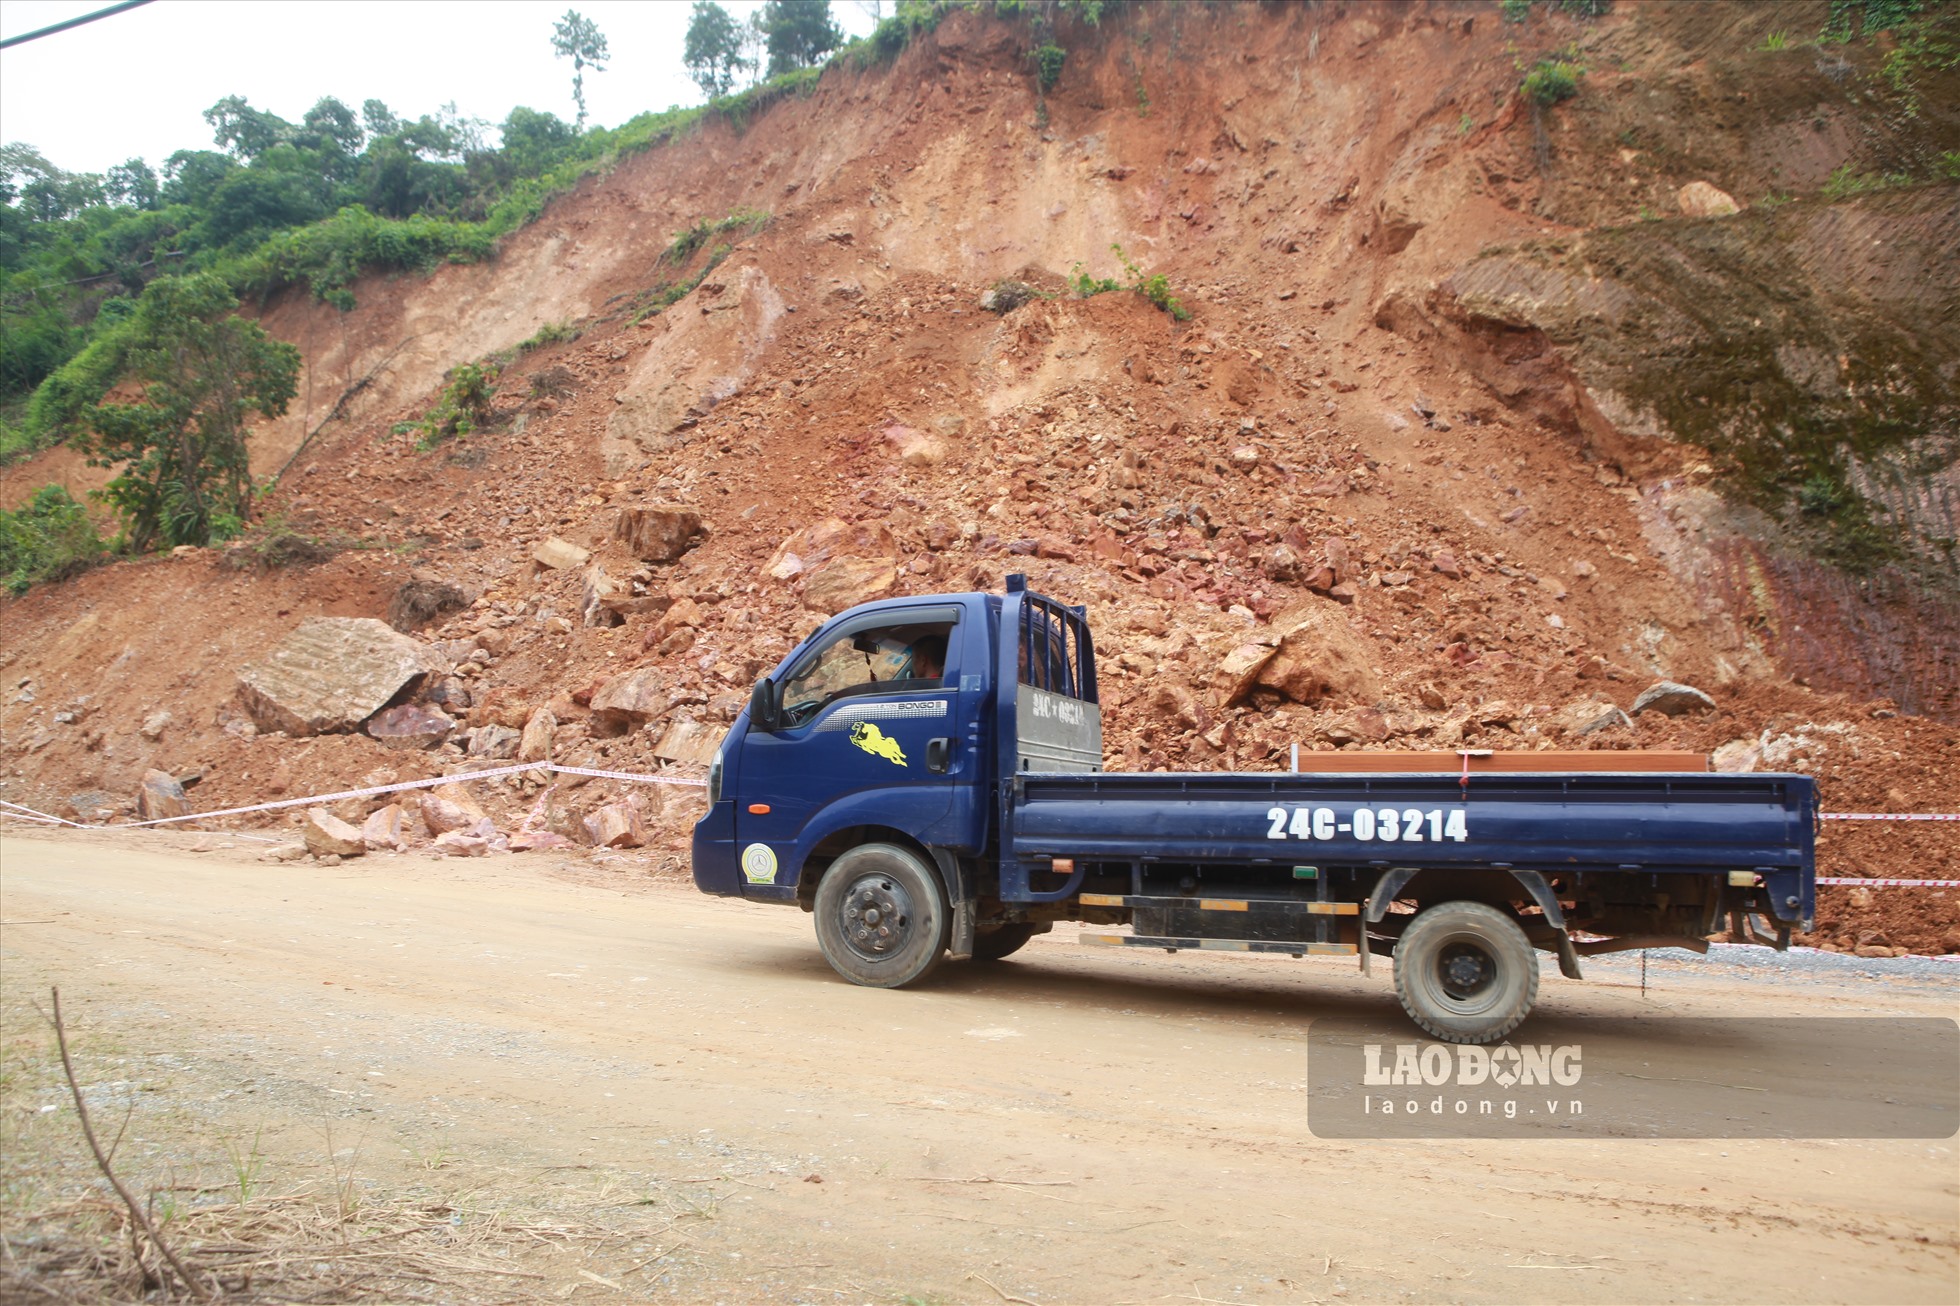 Triền đồi nứt toác ở Lào Cai: Dân lo tính mạng, lúa lo thiếu nước-4